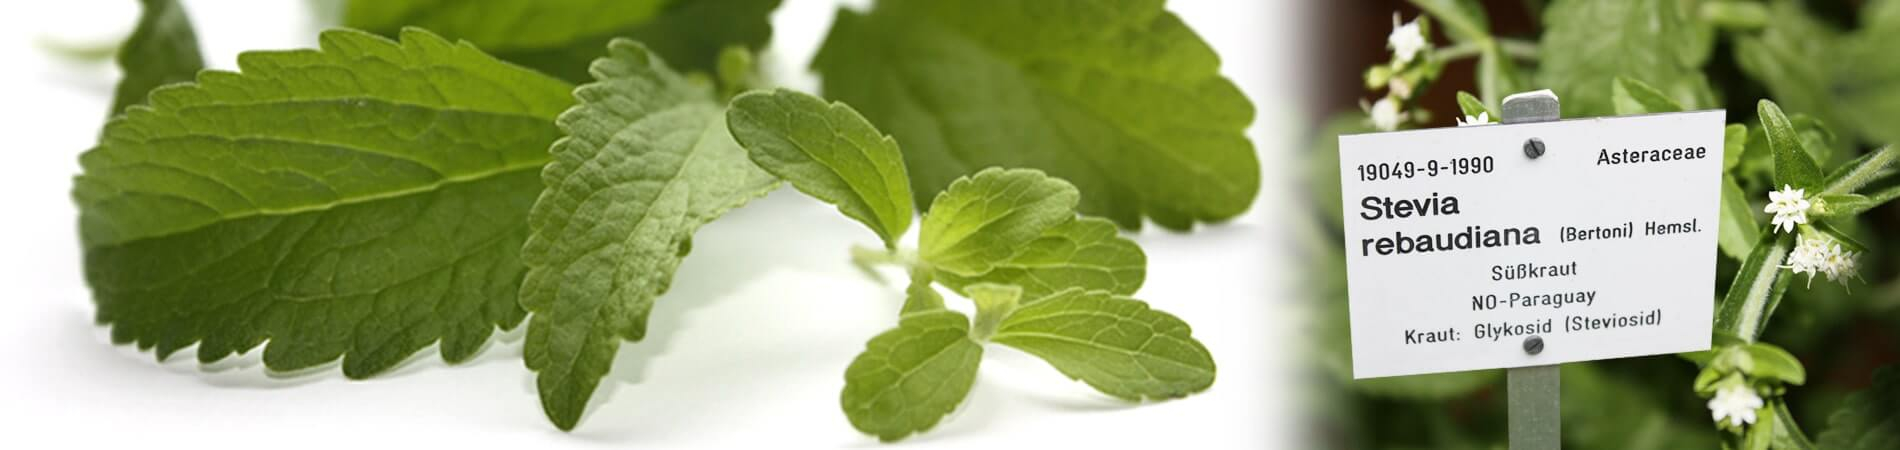 La pianta Stevia rebaudiana | steviapura